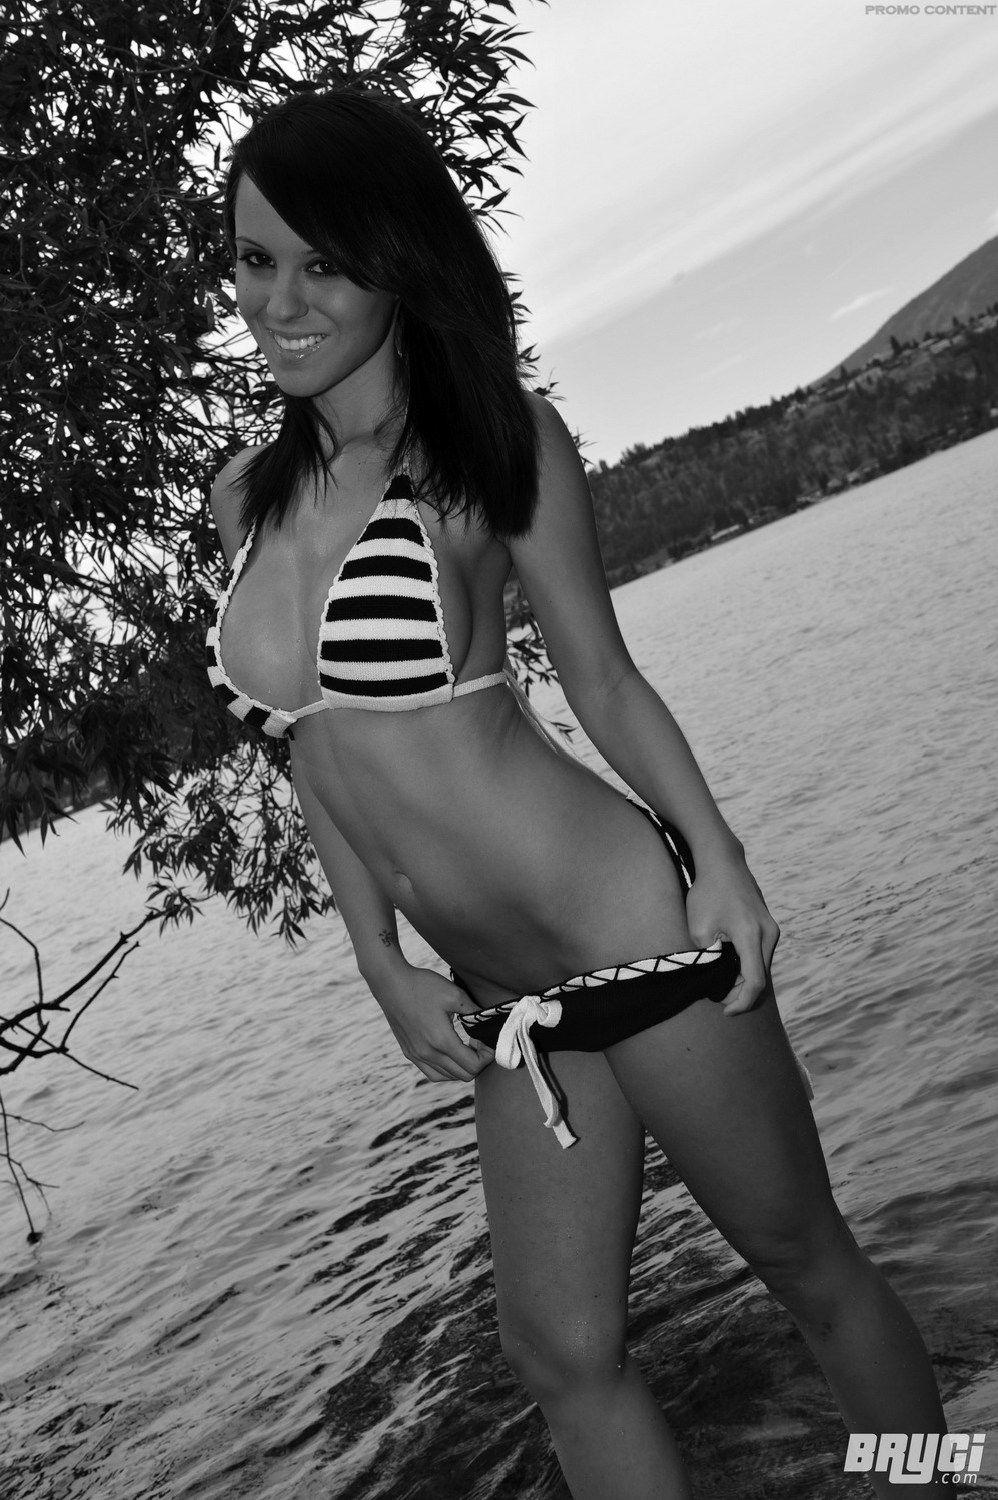 Bilder von bryci, die ihre Titten in schwarz-weiß zeigt
 #53576602